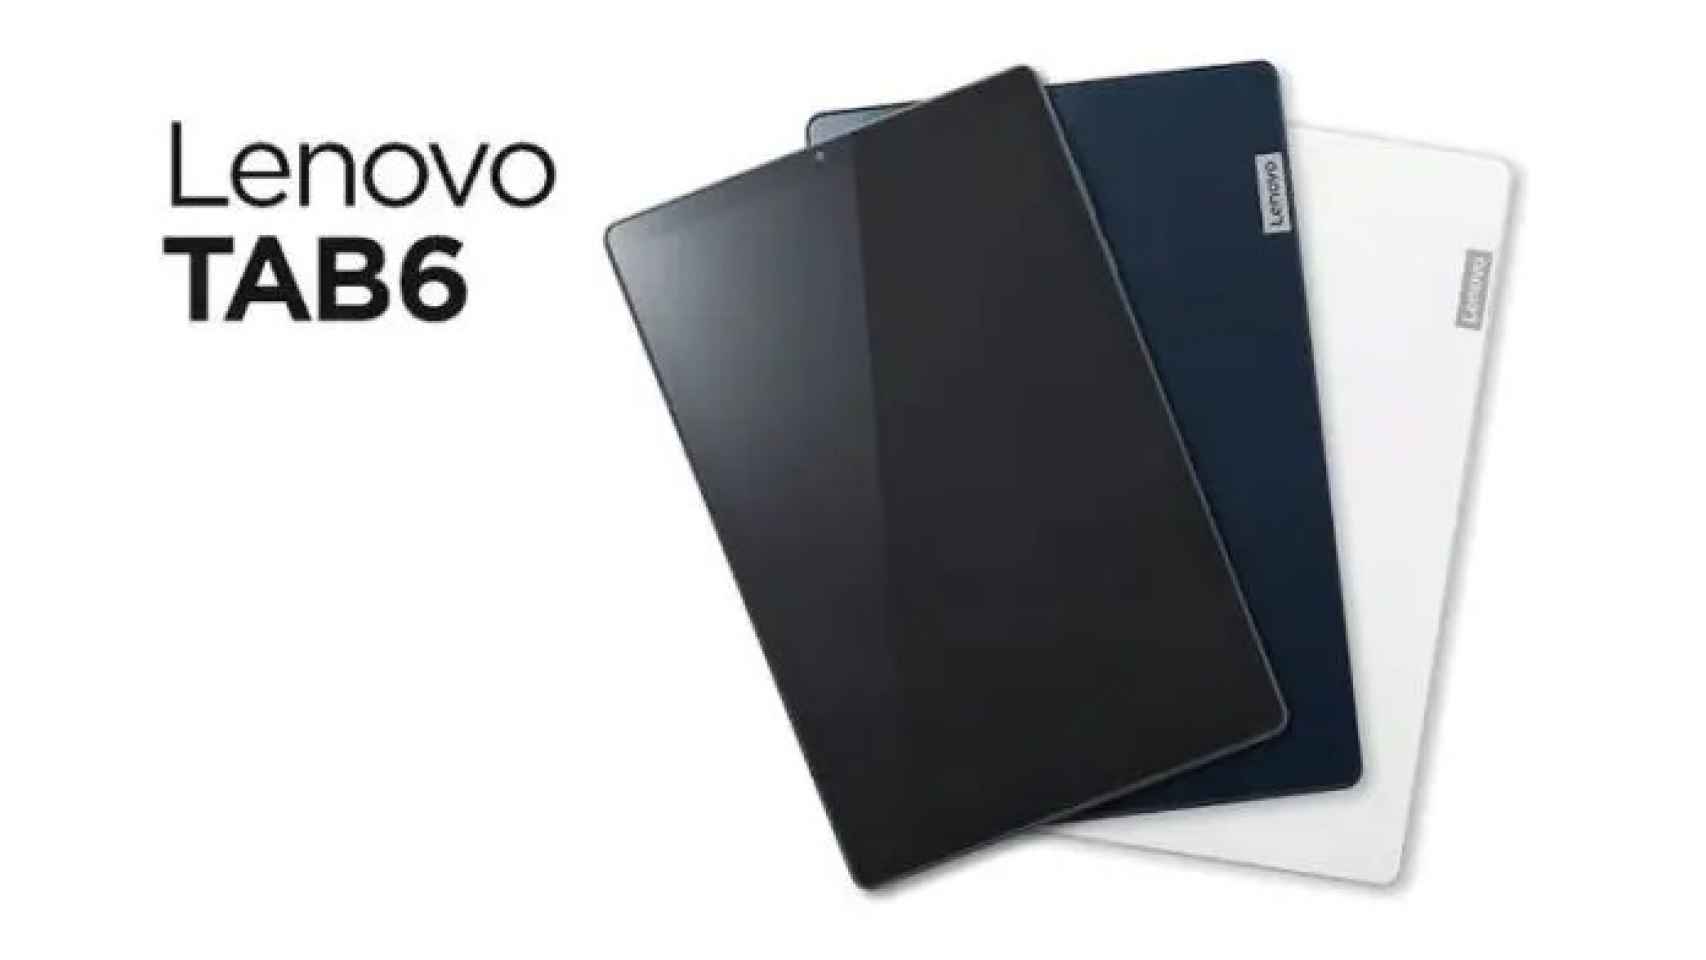 Nueva Lenovo TAB6: una tablet sencilla con 5G